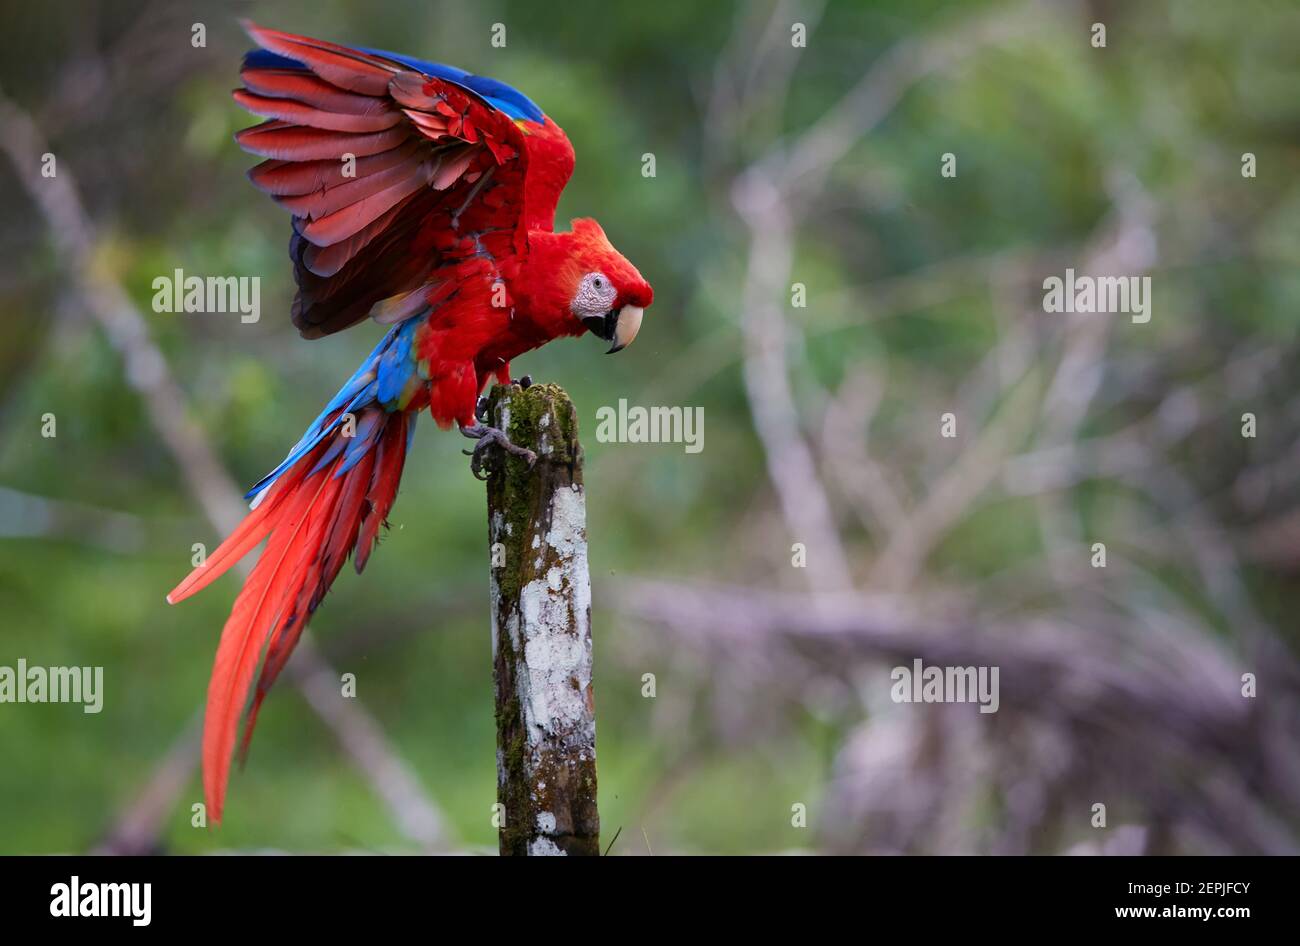 Scharlach-Ara-Papagei, Ara-macao, rot und blau, großer farbenfroher amazonas-Papagei mit ausgestreckten Flügeln, der auf einem Pfahl gegen grüne verschwommene Fores landet Stockfoto